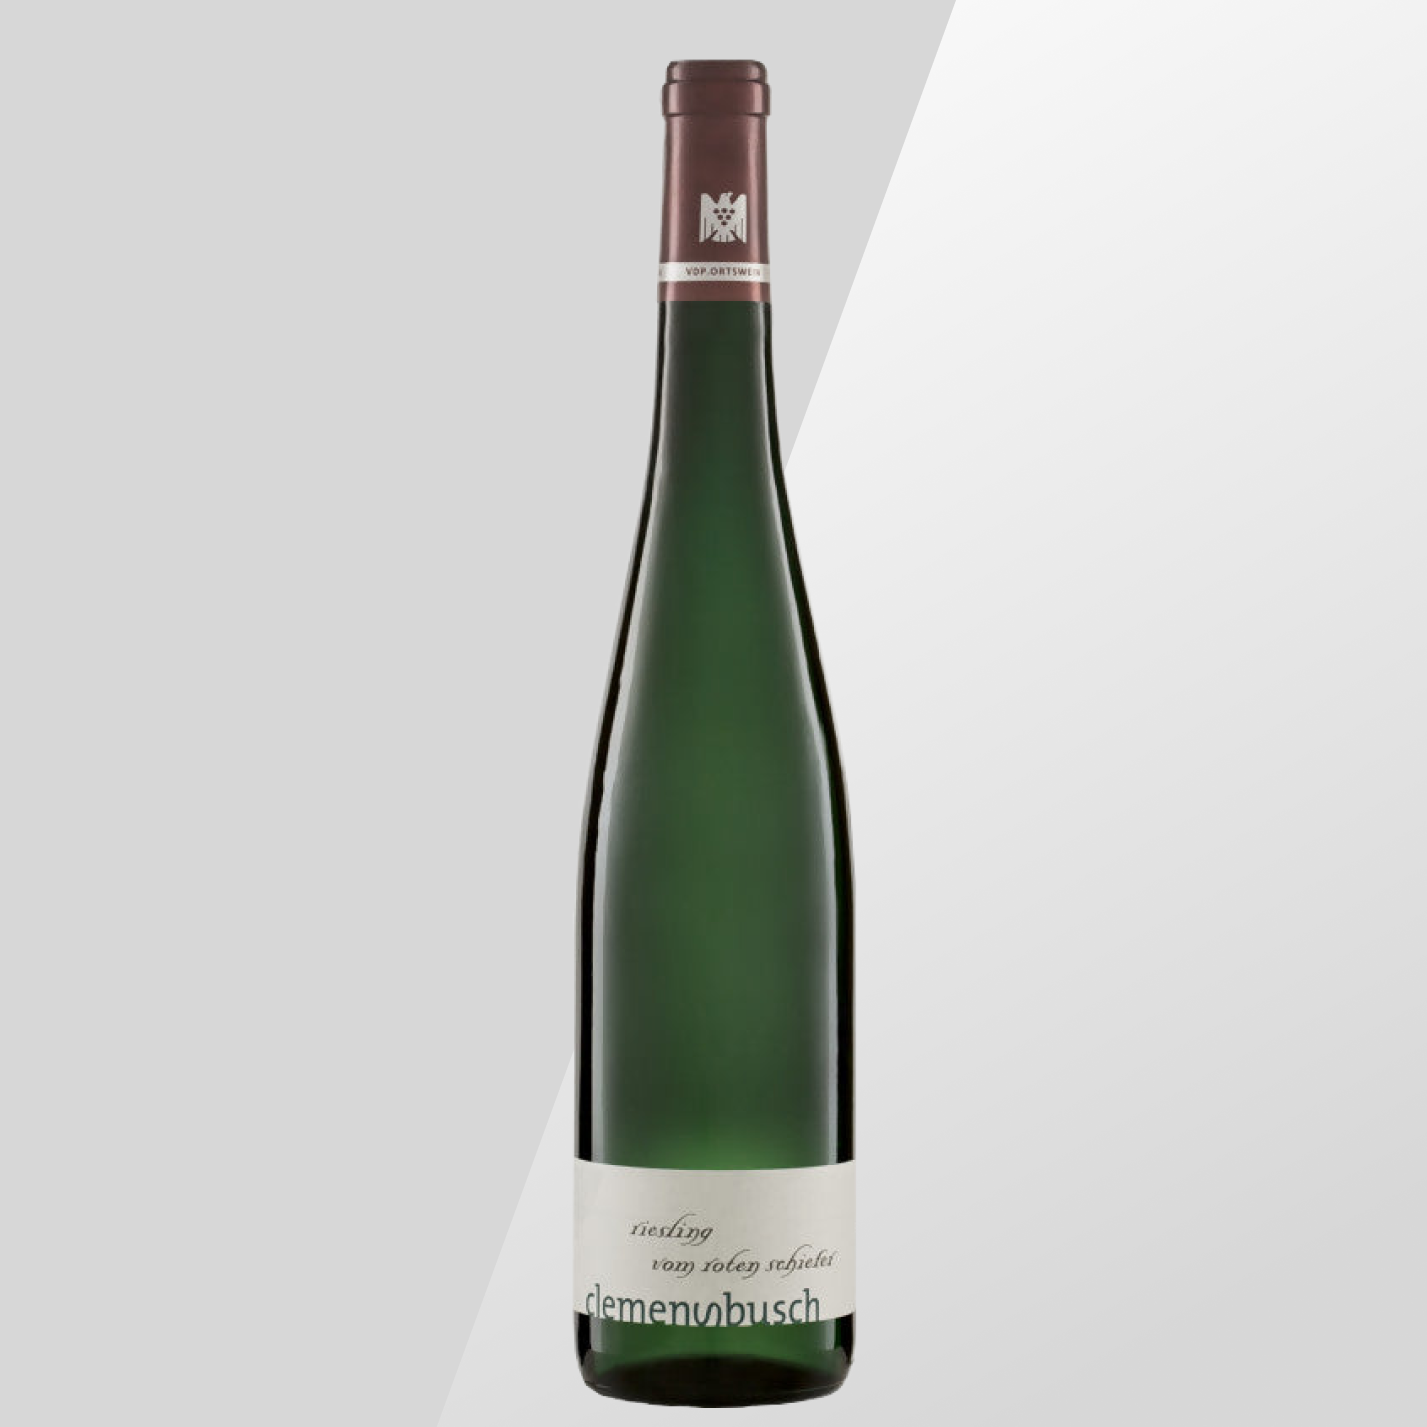 Clemens Busch - Riesling VDP.Ortswein vom Roten Schiefer 2020